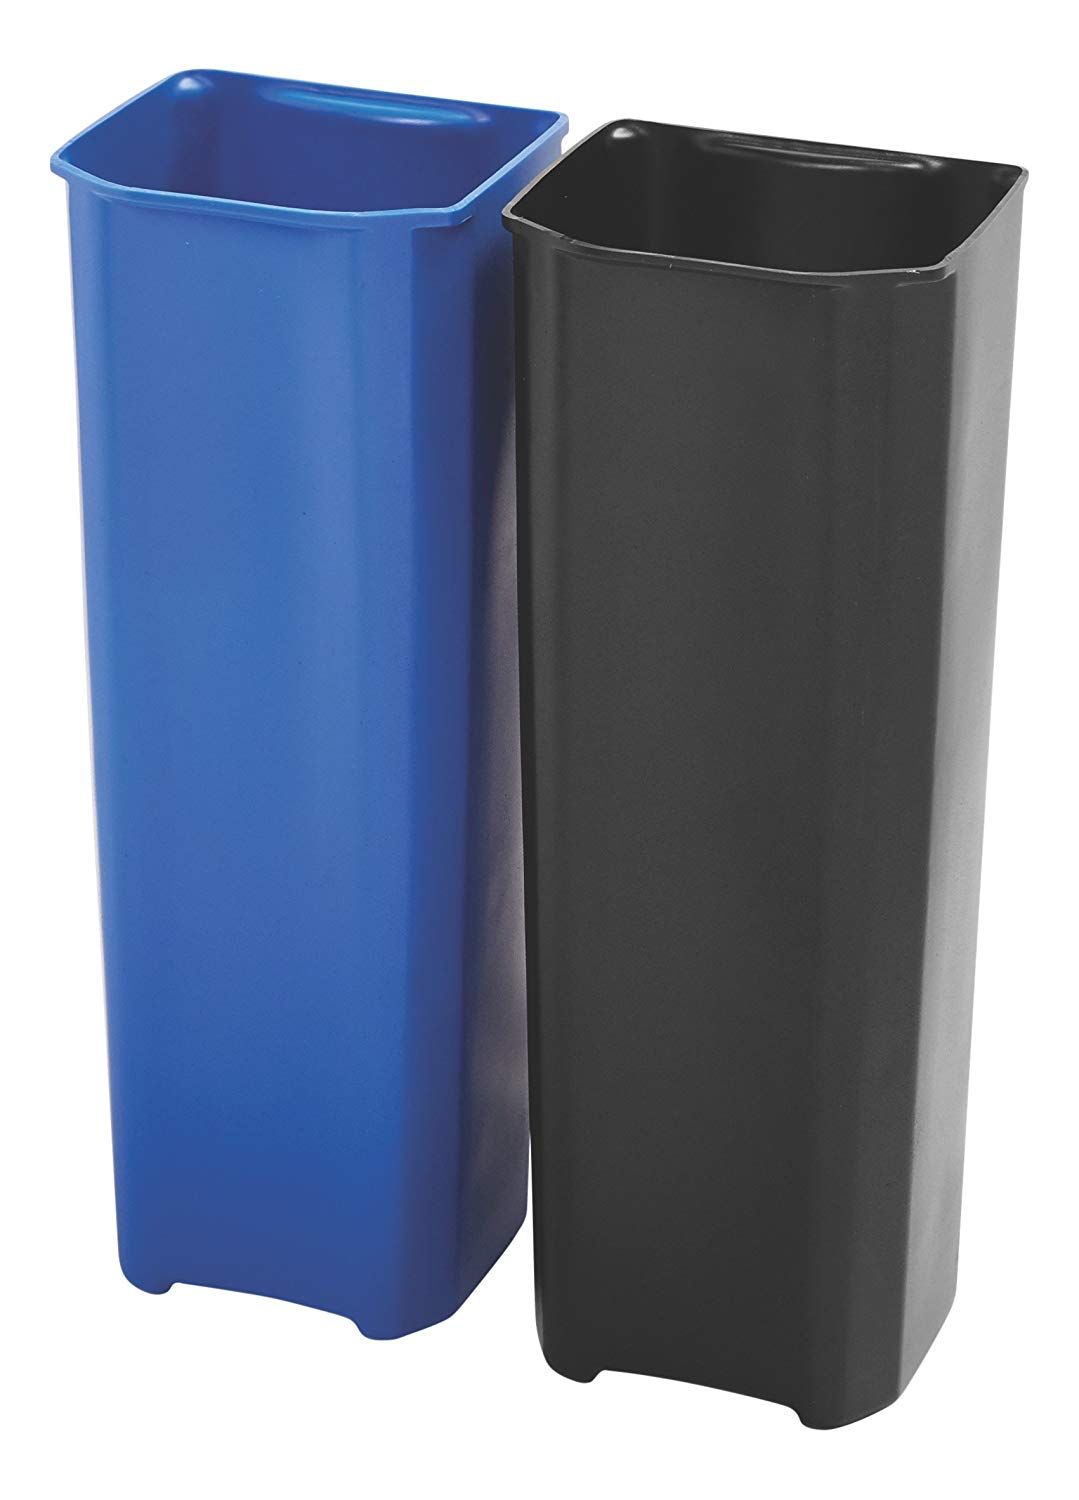 Rubbermaid Recycling binnenbakken 2x25 ltr End Step RVS, Rubbermaid, model: VB 225013, zwart, blauw